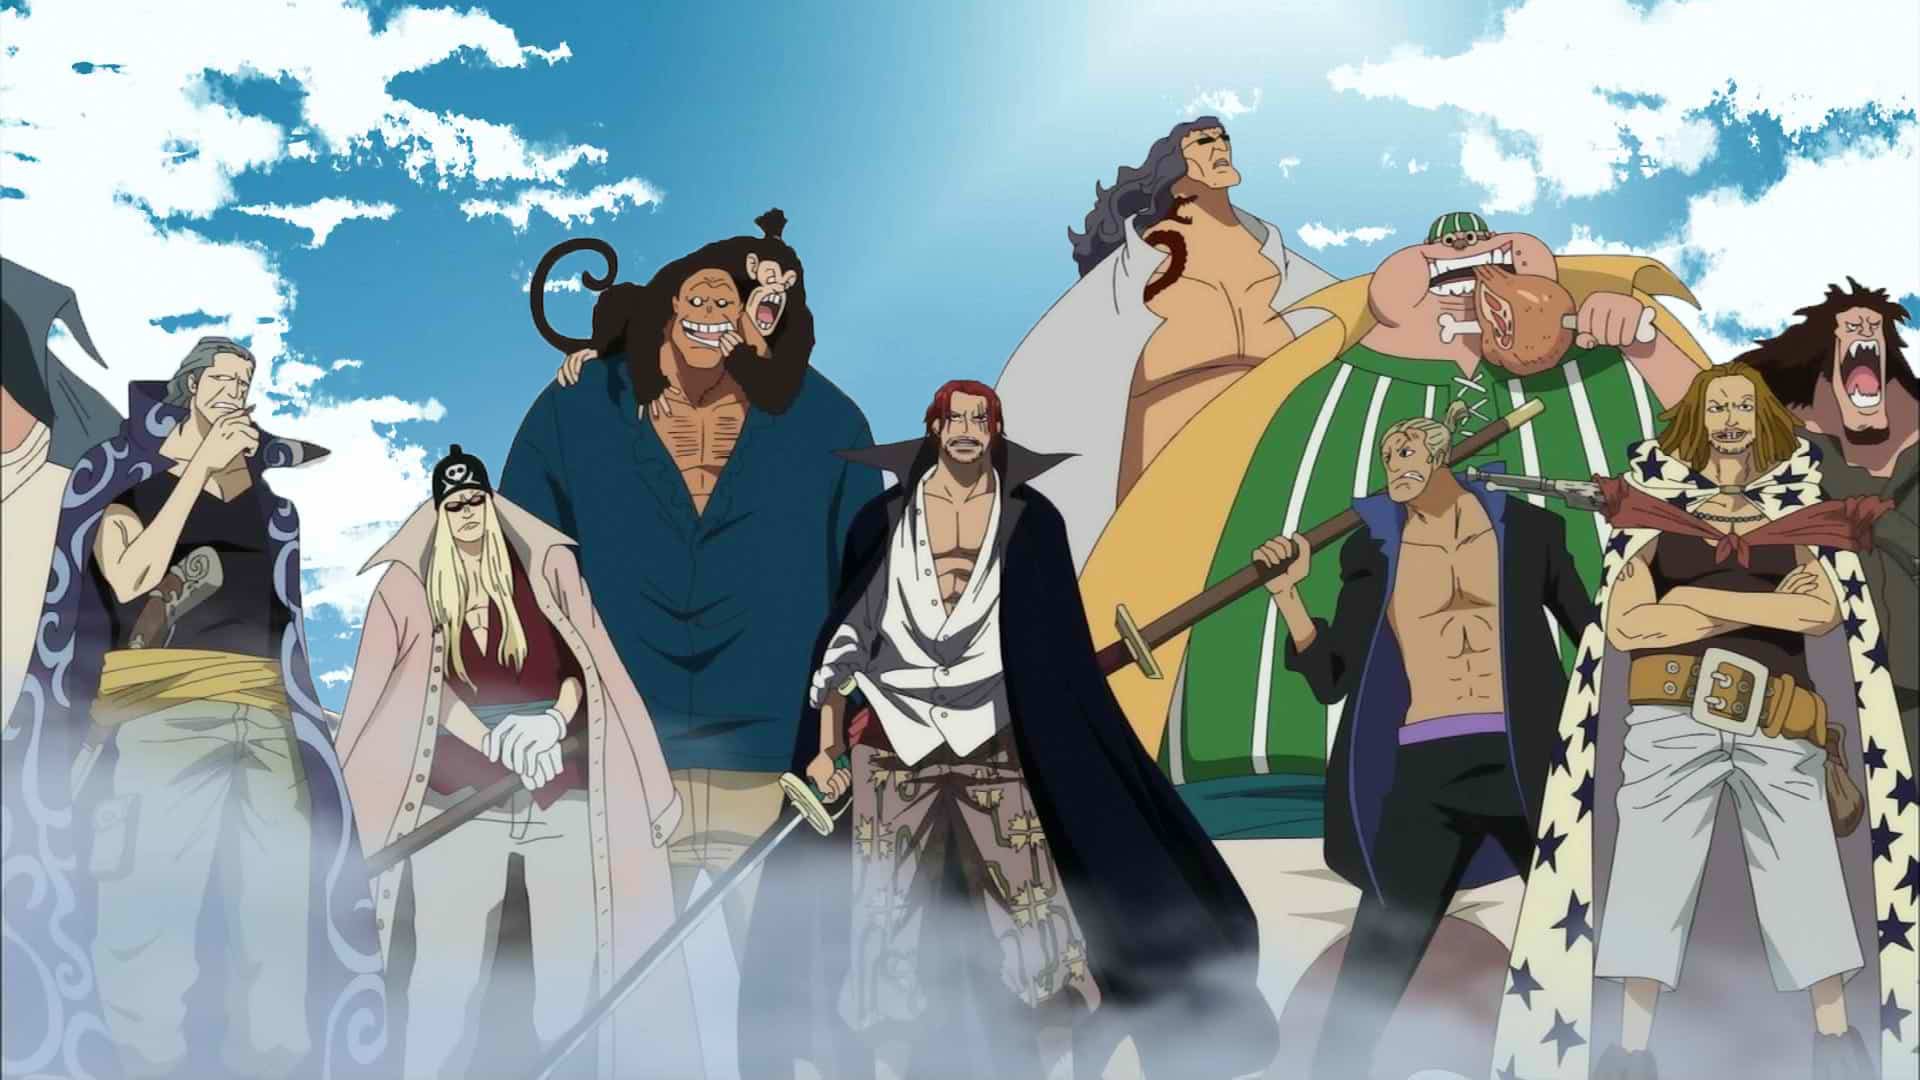 Hải Tặc Báo Thù - Fan One Piece tranh cãi vì Ace mạnh ngang Râu Trắng và Shanks  Tóc Đỏ